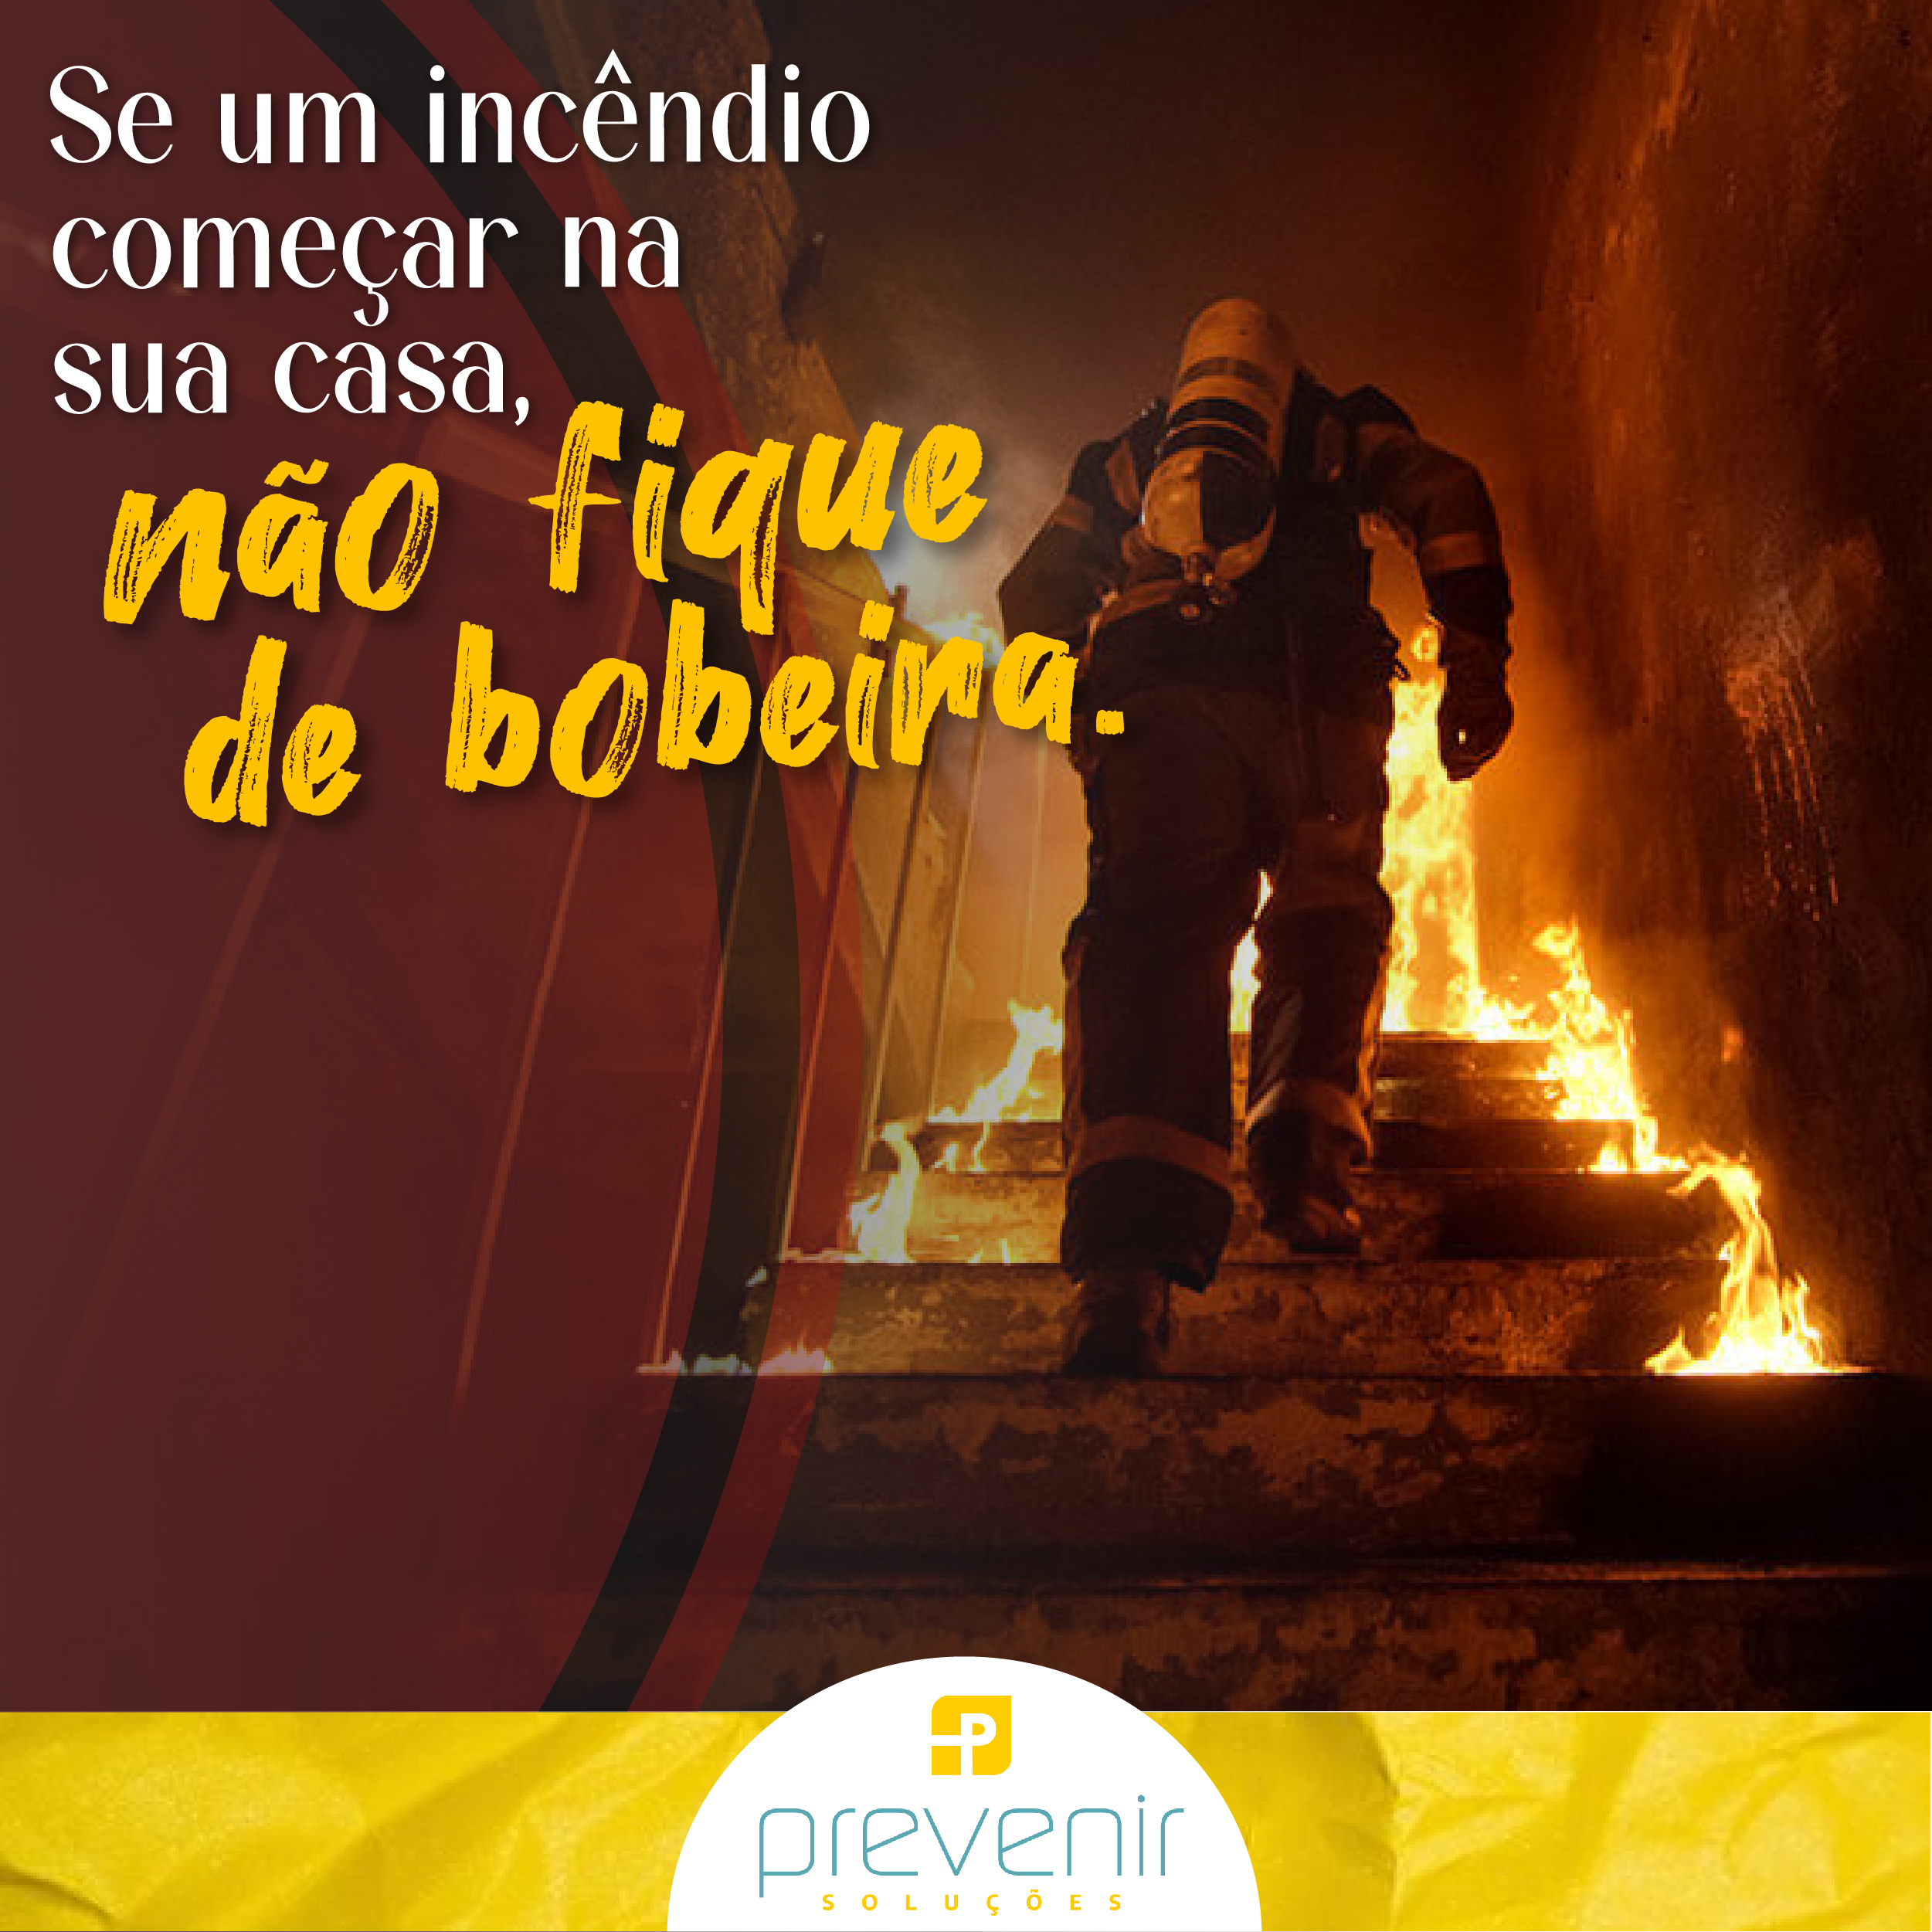 Se um incêndio começar na sua casa, não fique de bobeira.